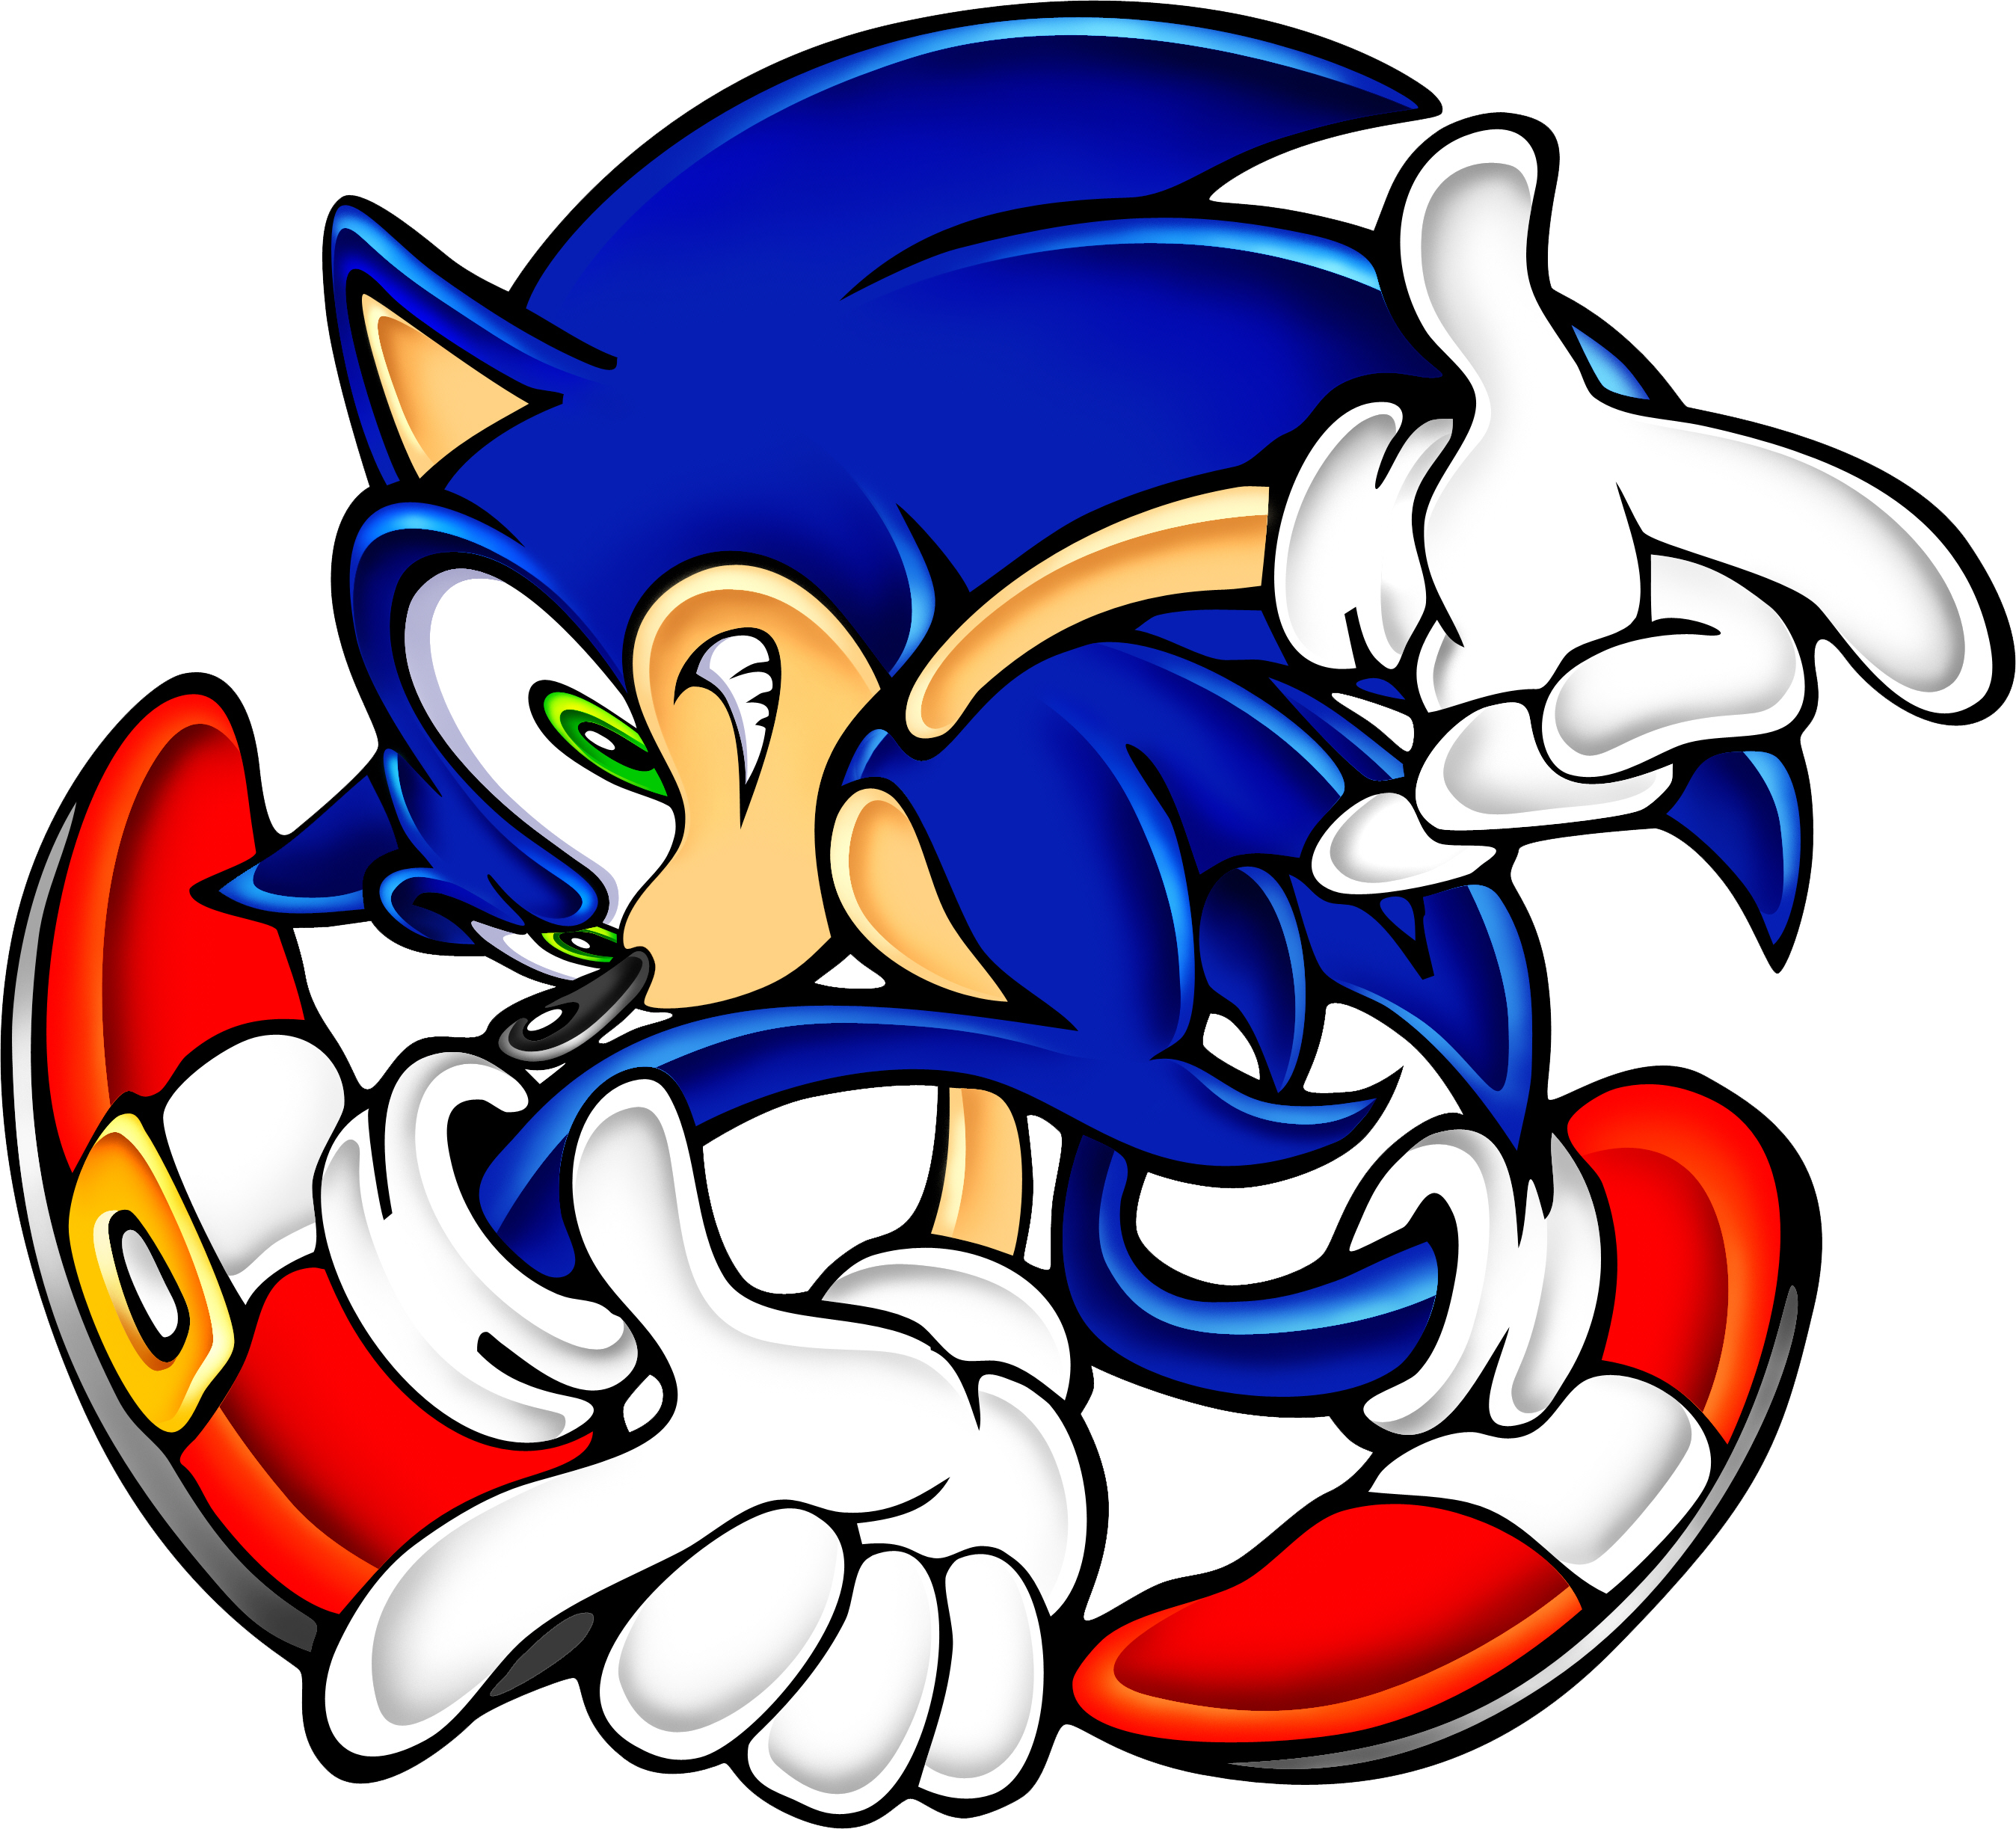 Sonic the Hedgehog  OK K.O.!+BreezeWiki